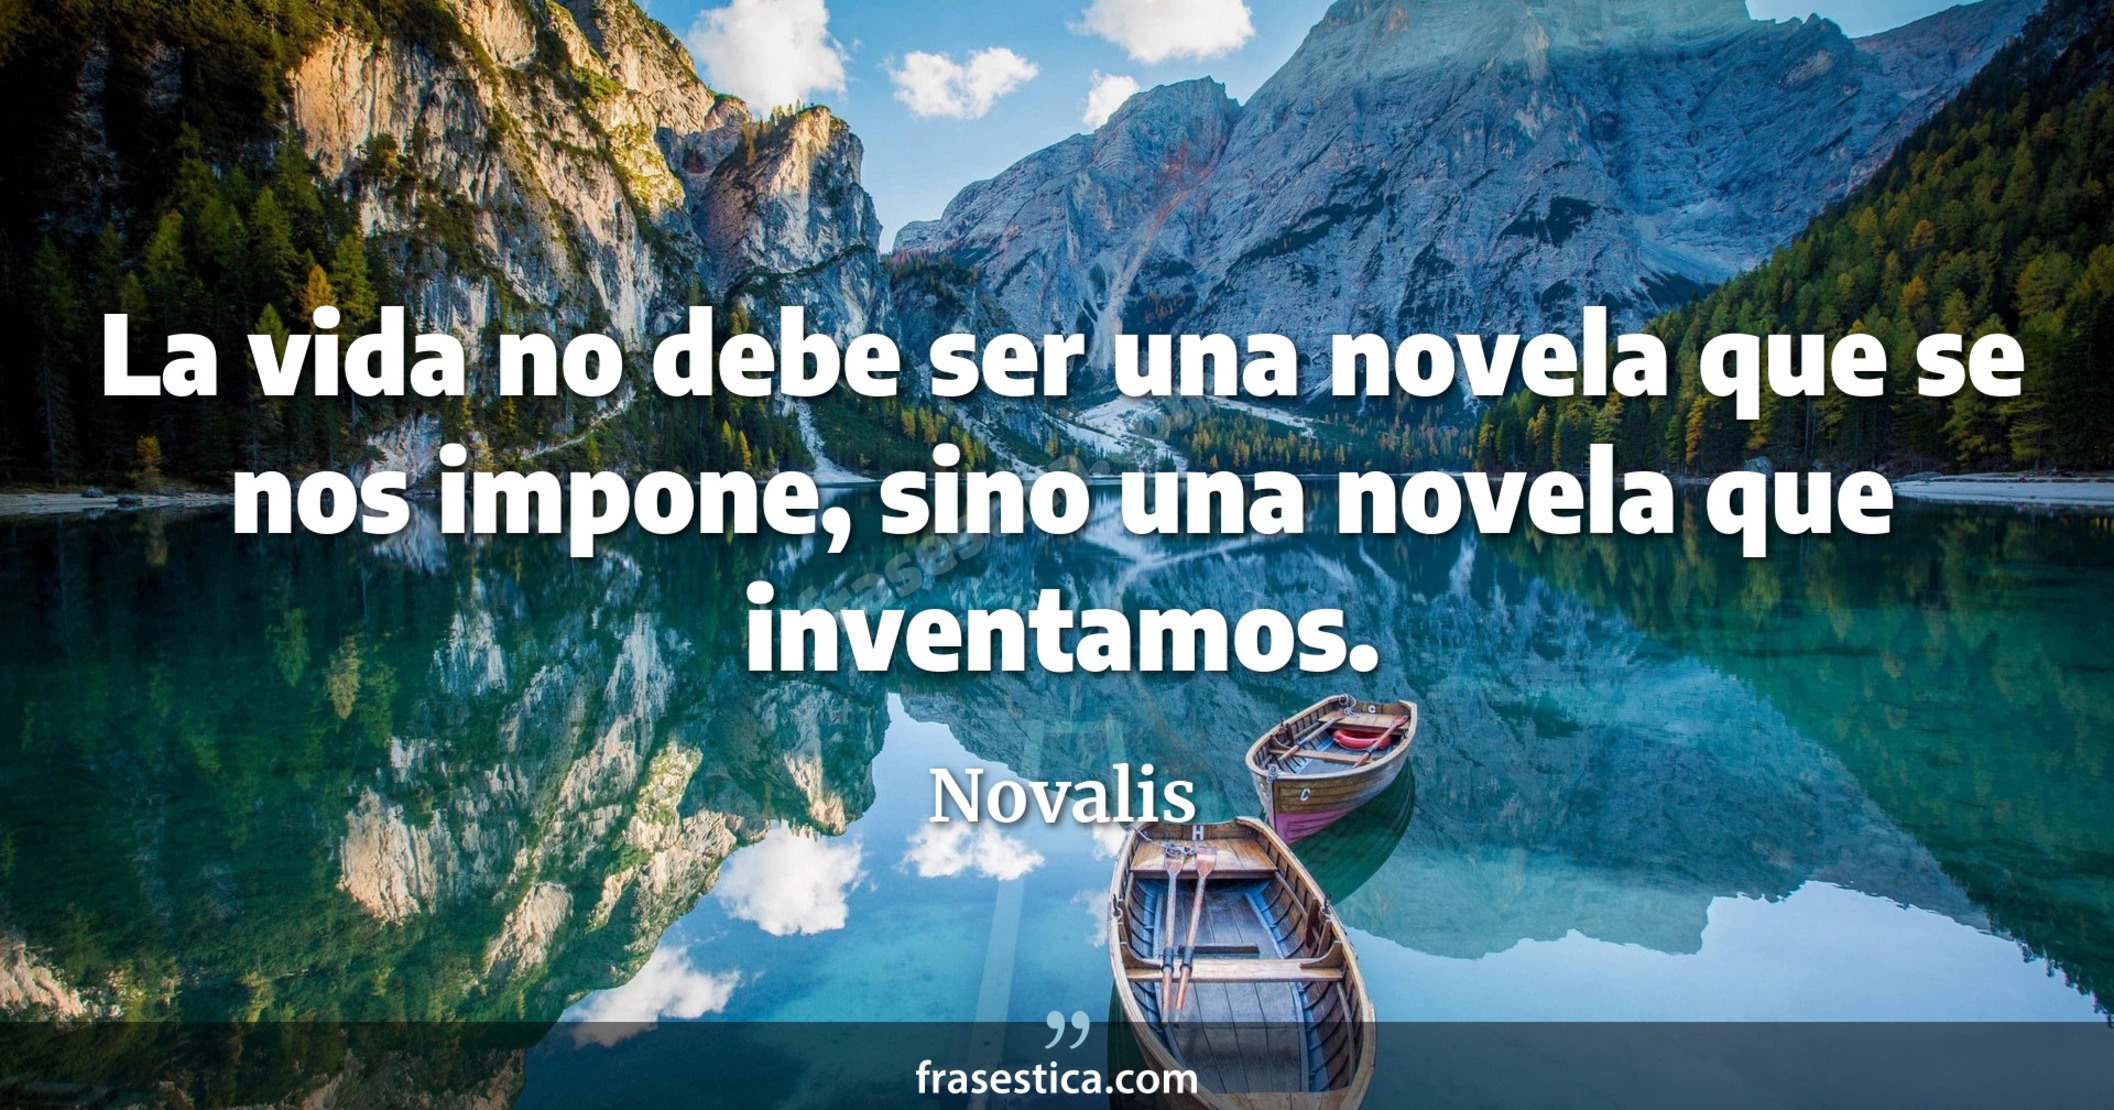 La vida no debe ser una novela que se nos impone, sino una novela que inventamos. - Novalis